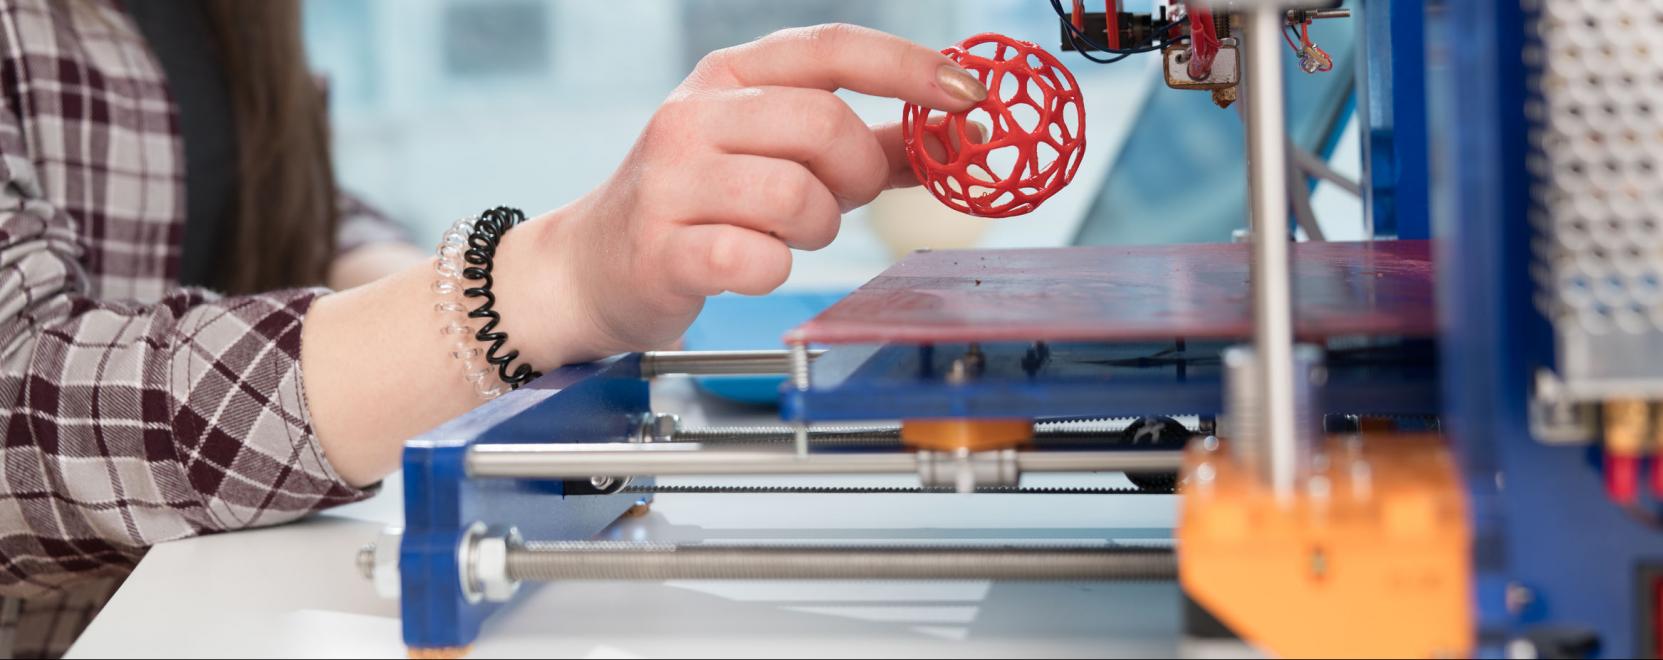 3D nyomtatás az iskolában